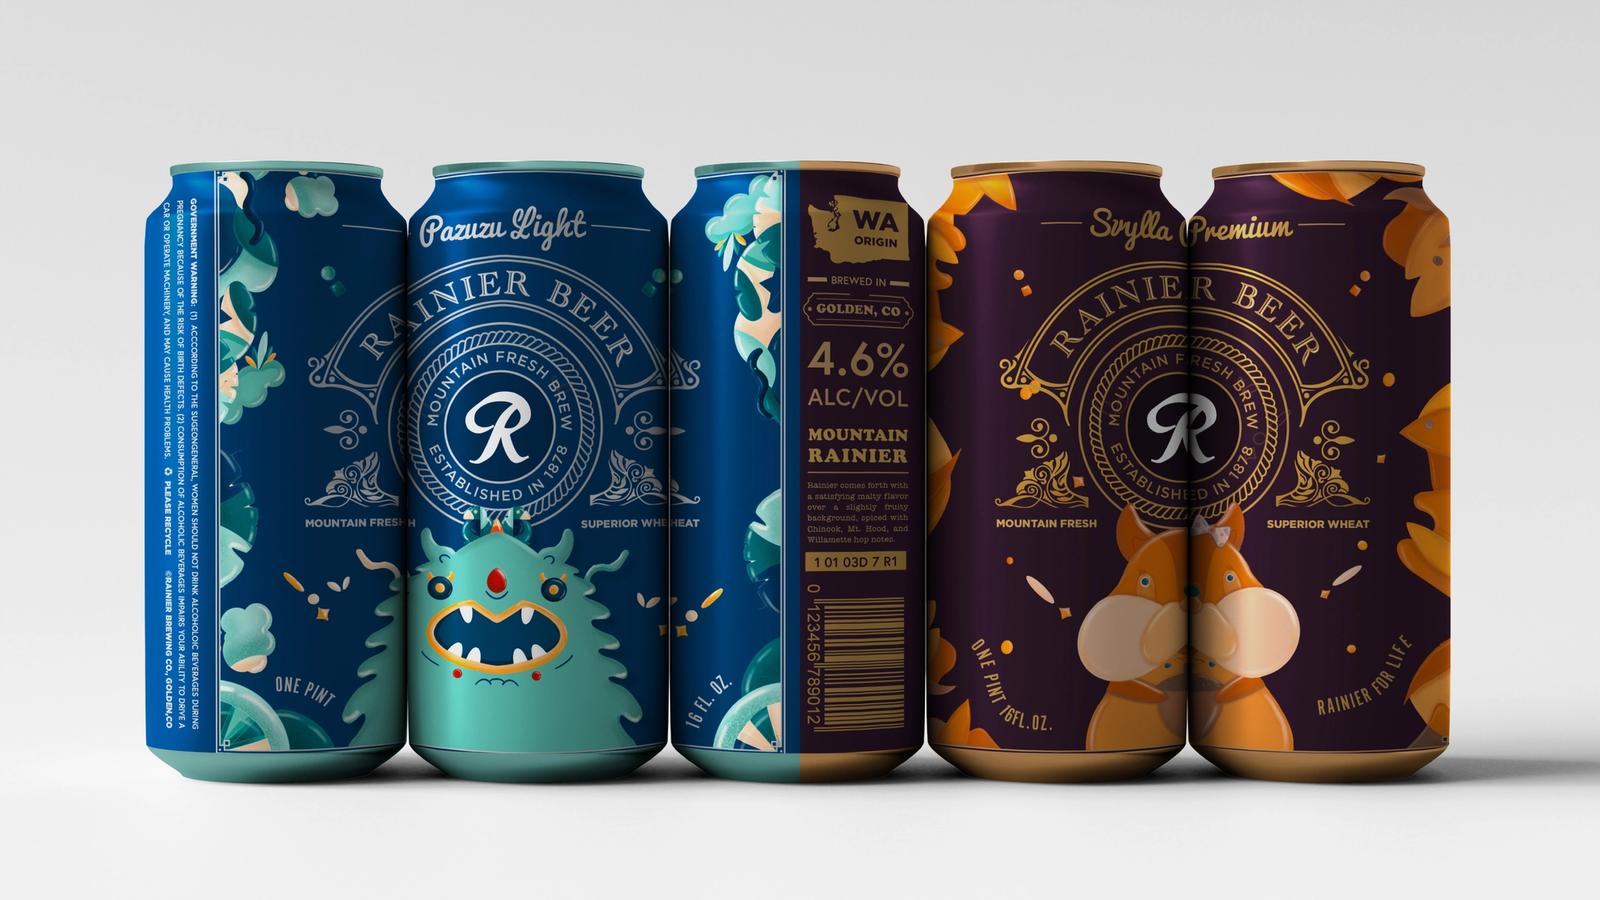 Ranier Beer Packaging